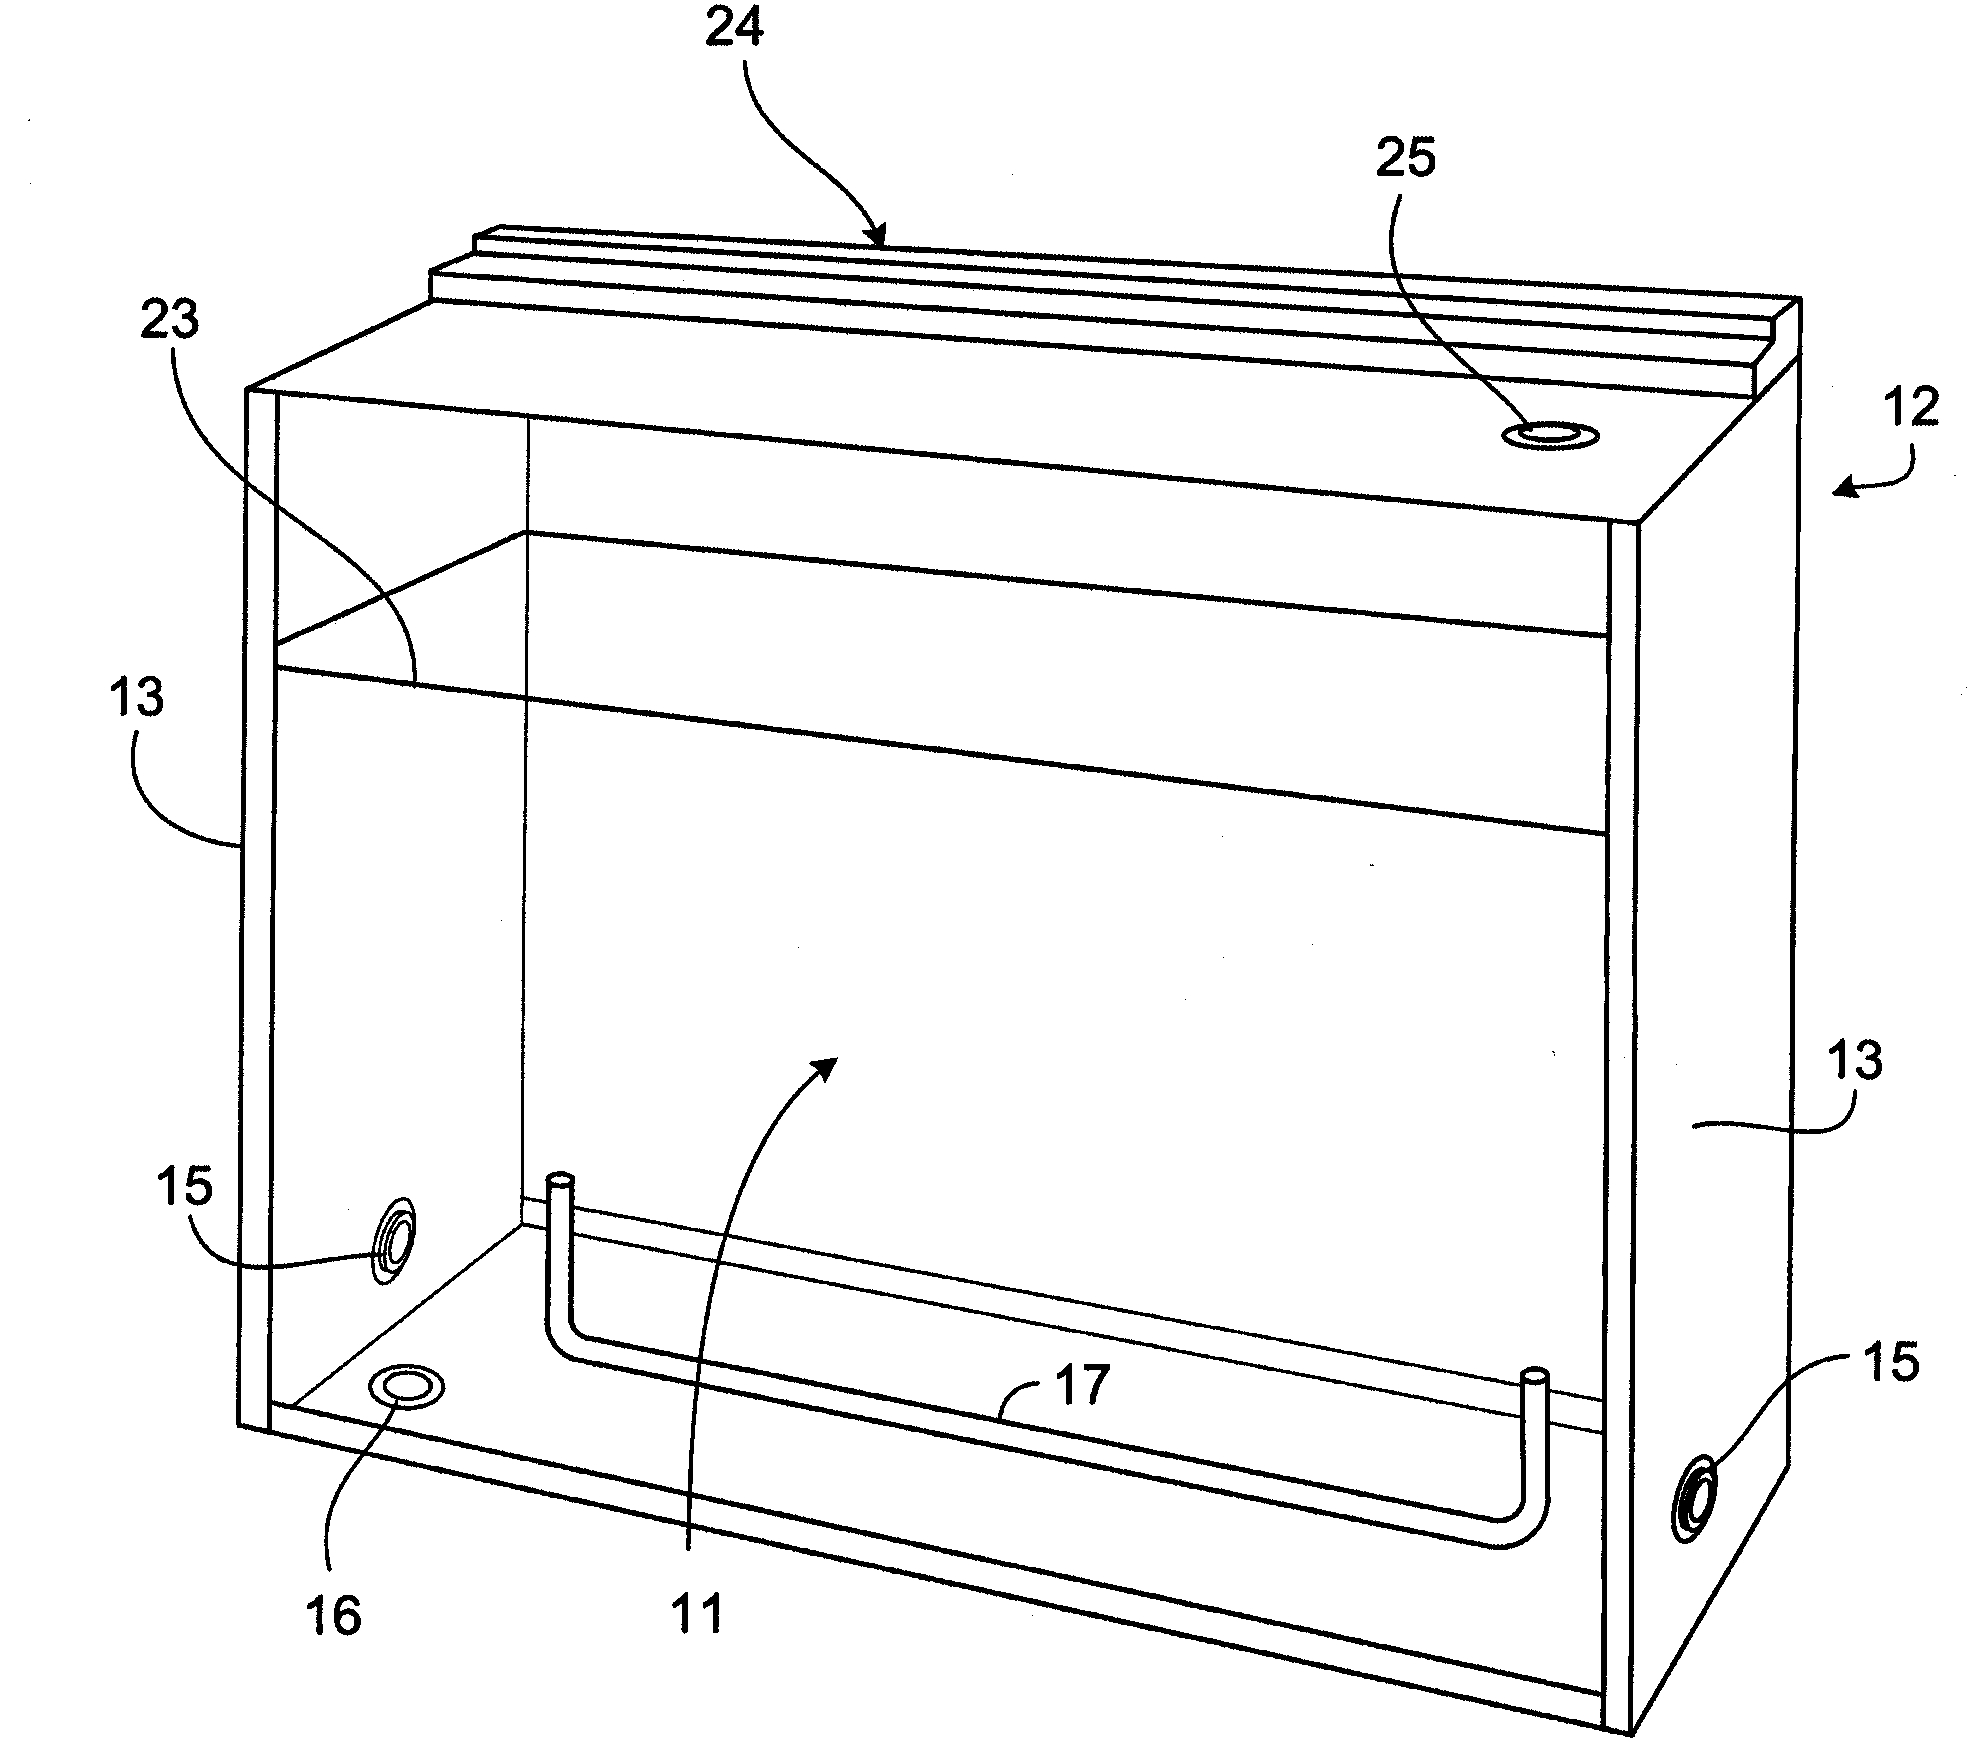 Photobioreactor system